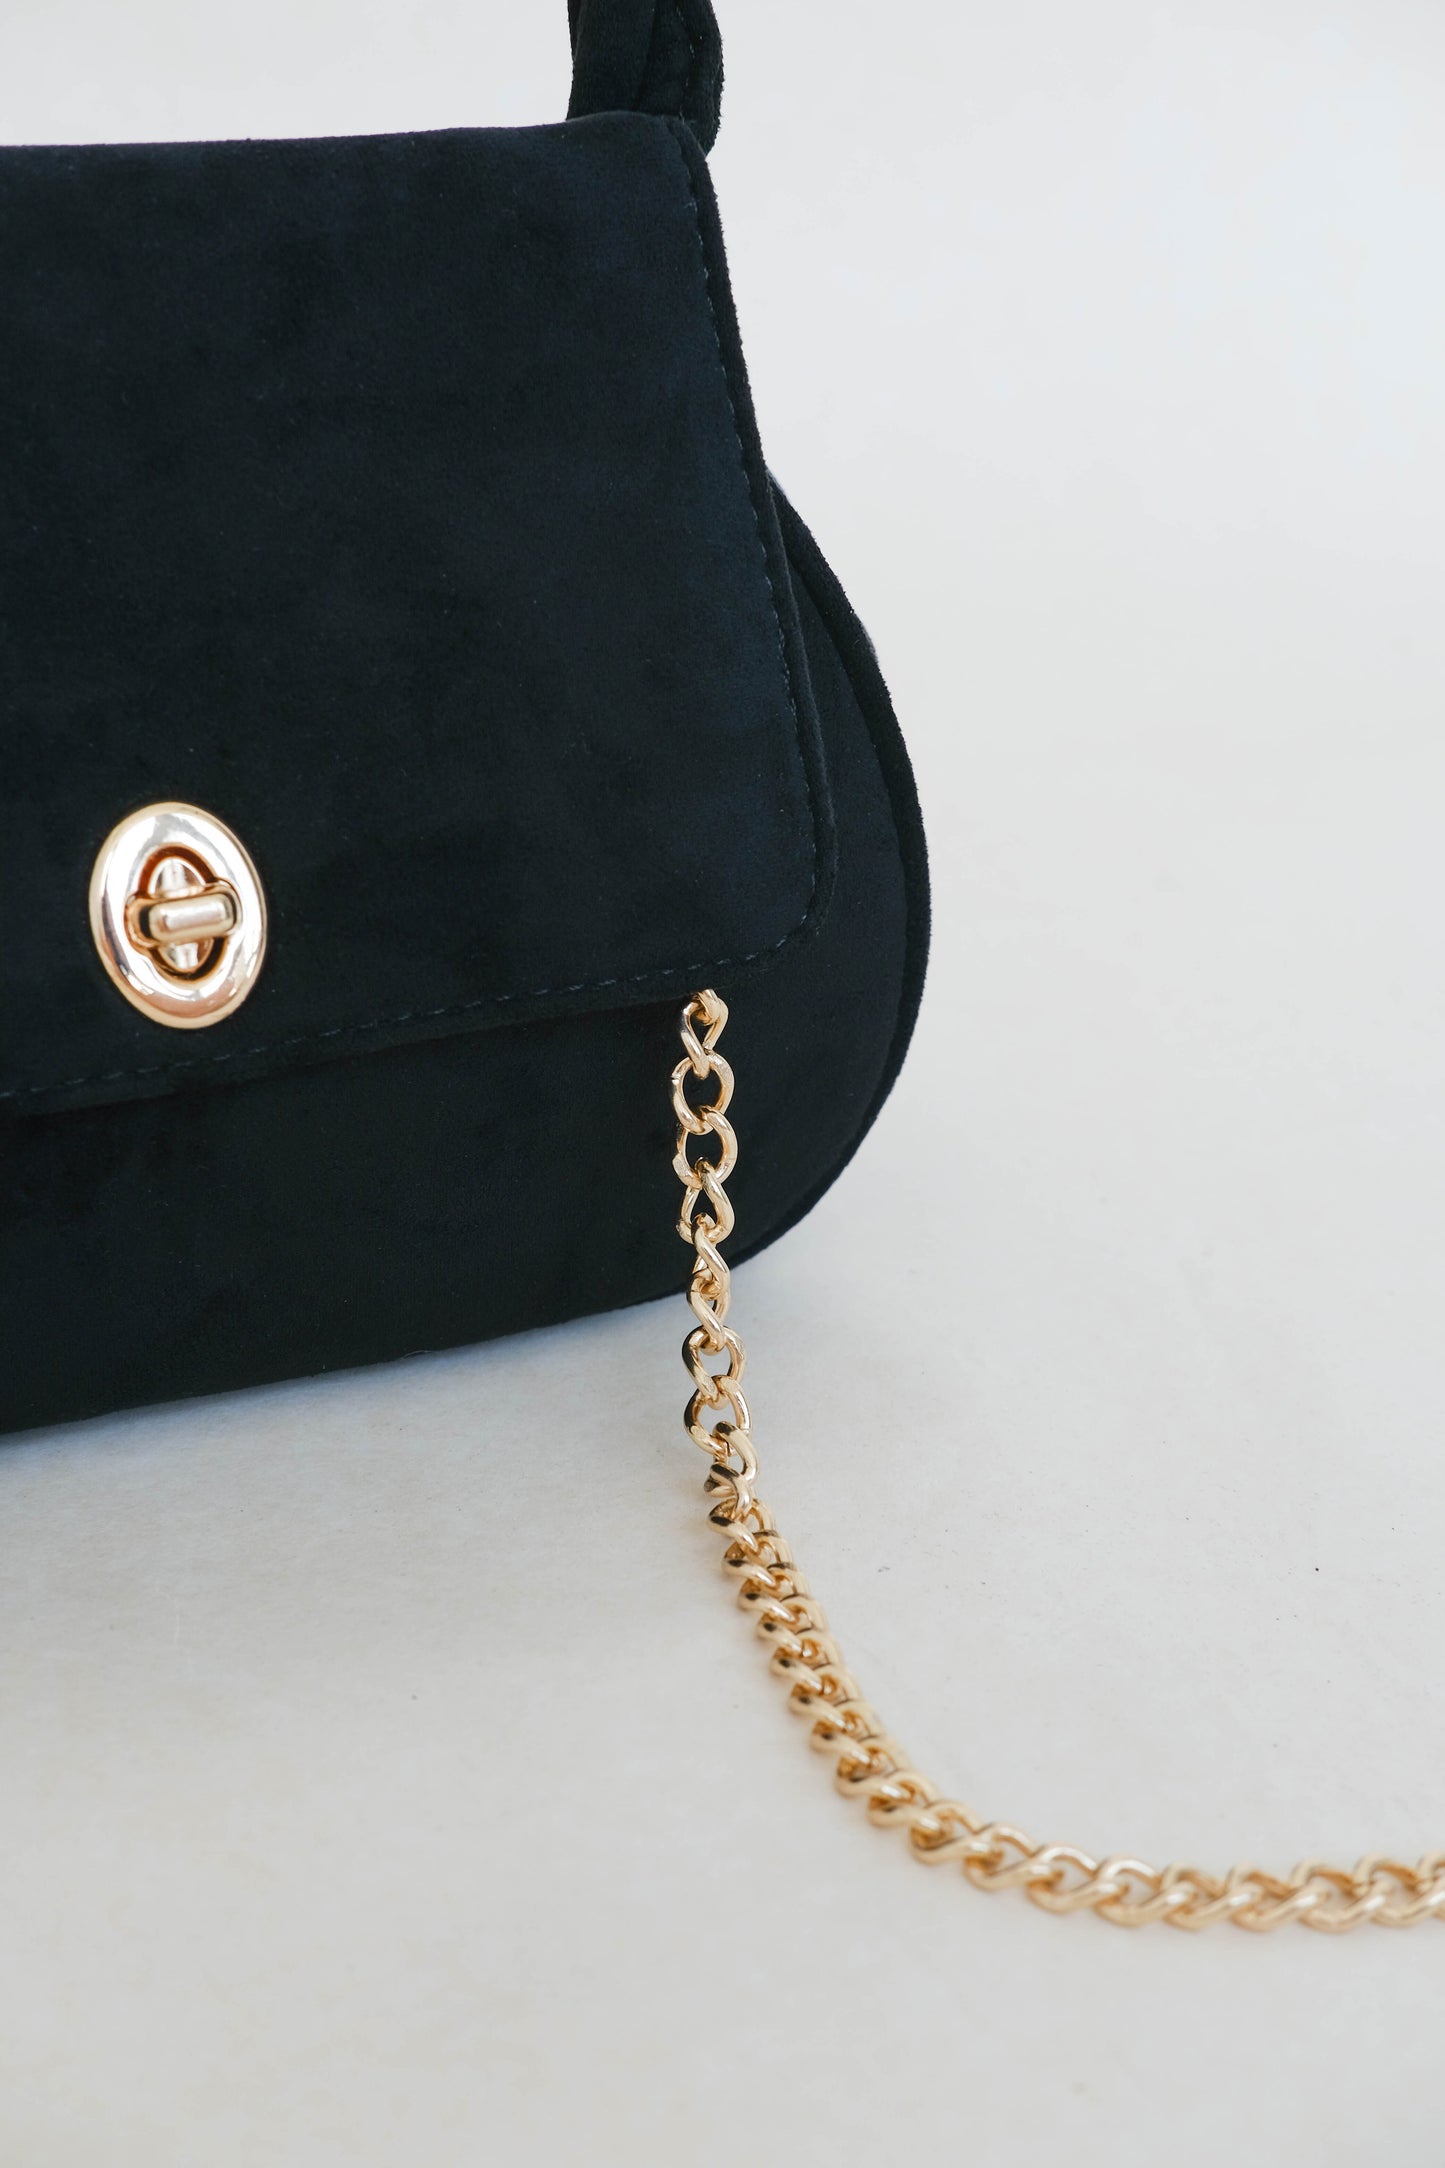 French velvet matte gold buckle retro handmade twist handbag